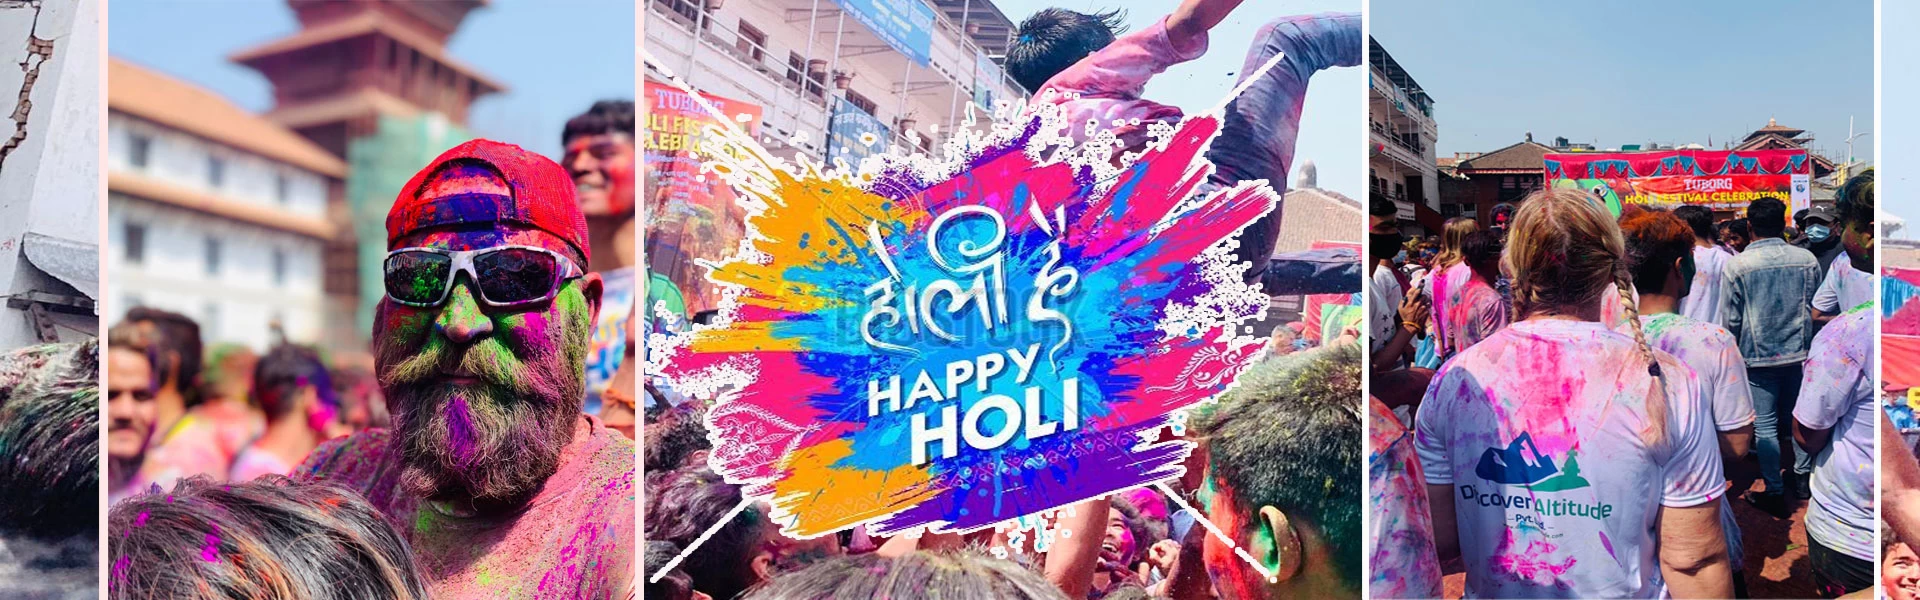 Holi Festival banner